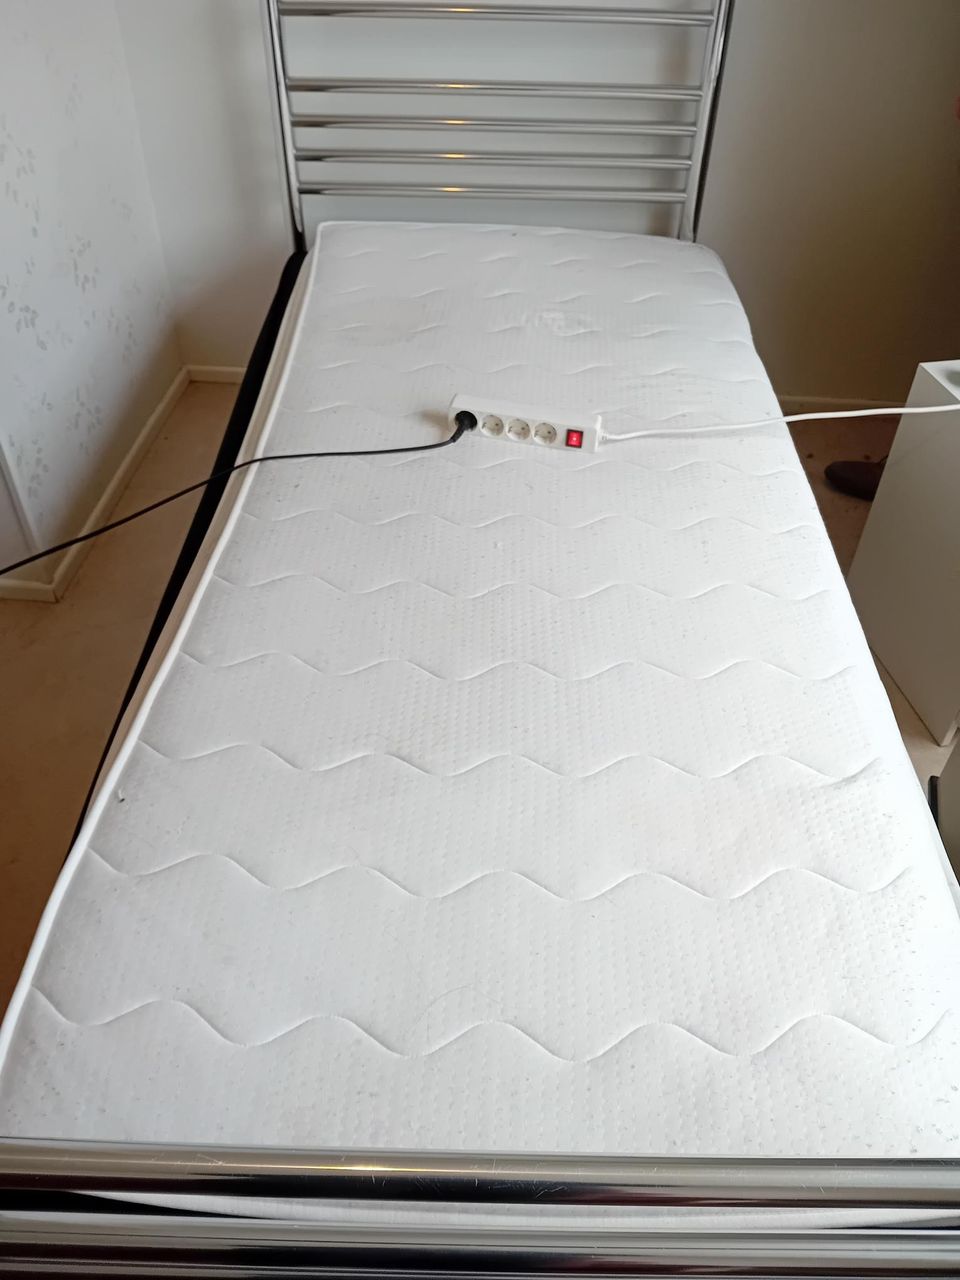 Ikea sänky